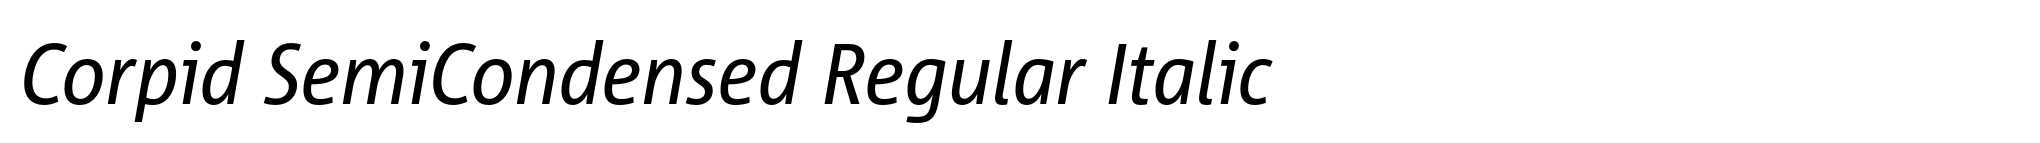 Corpid SemiCondensed Regular Italic image